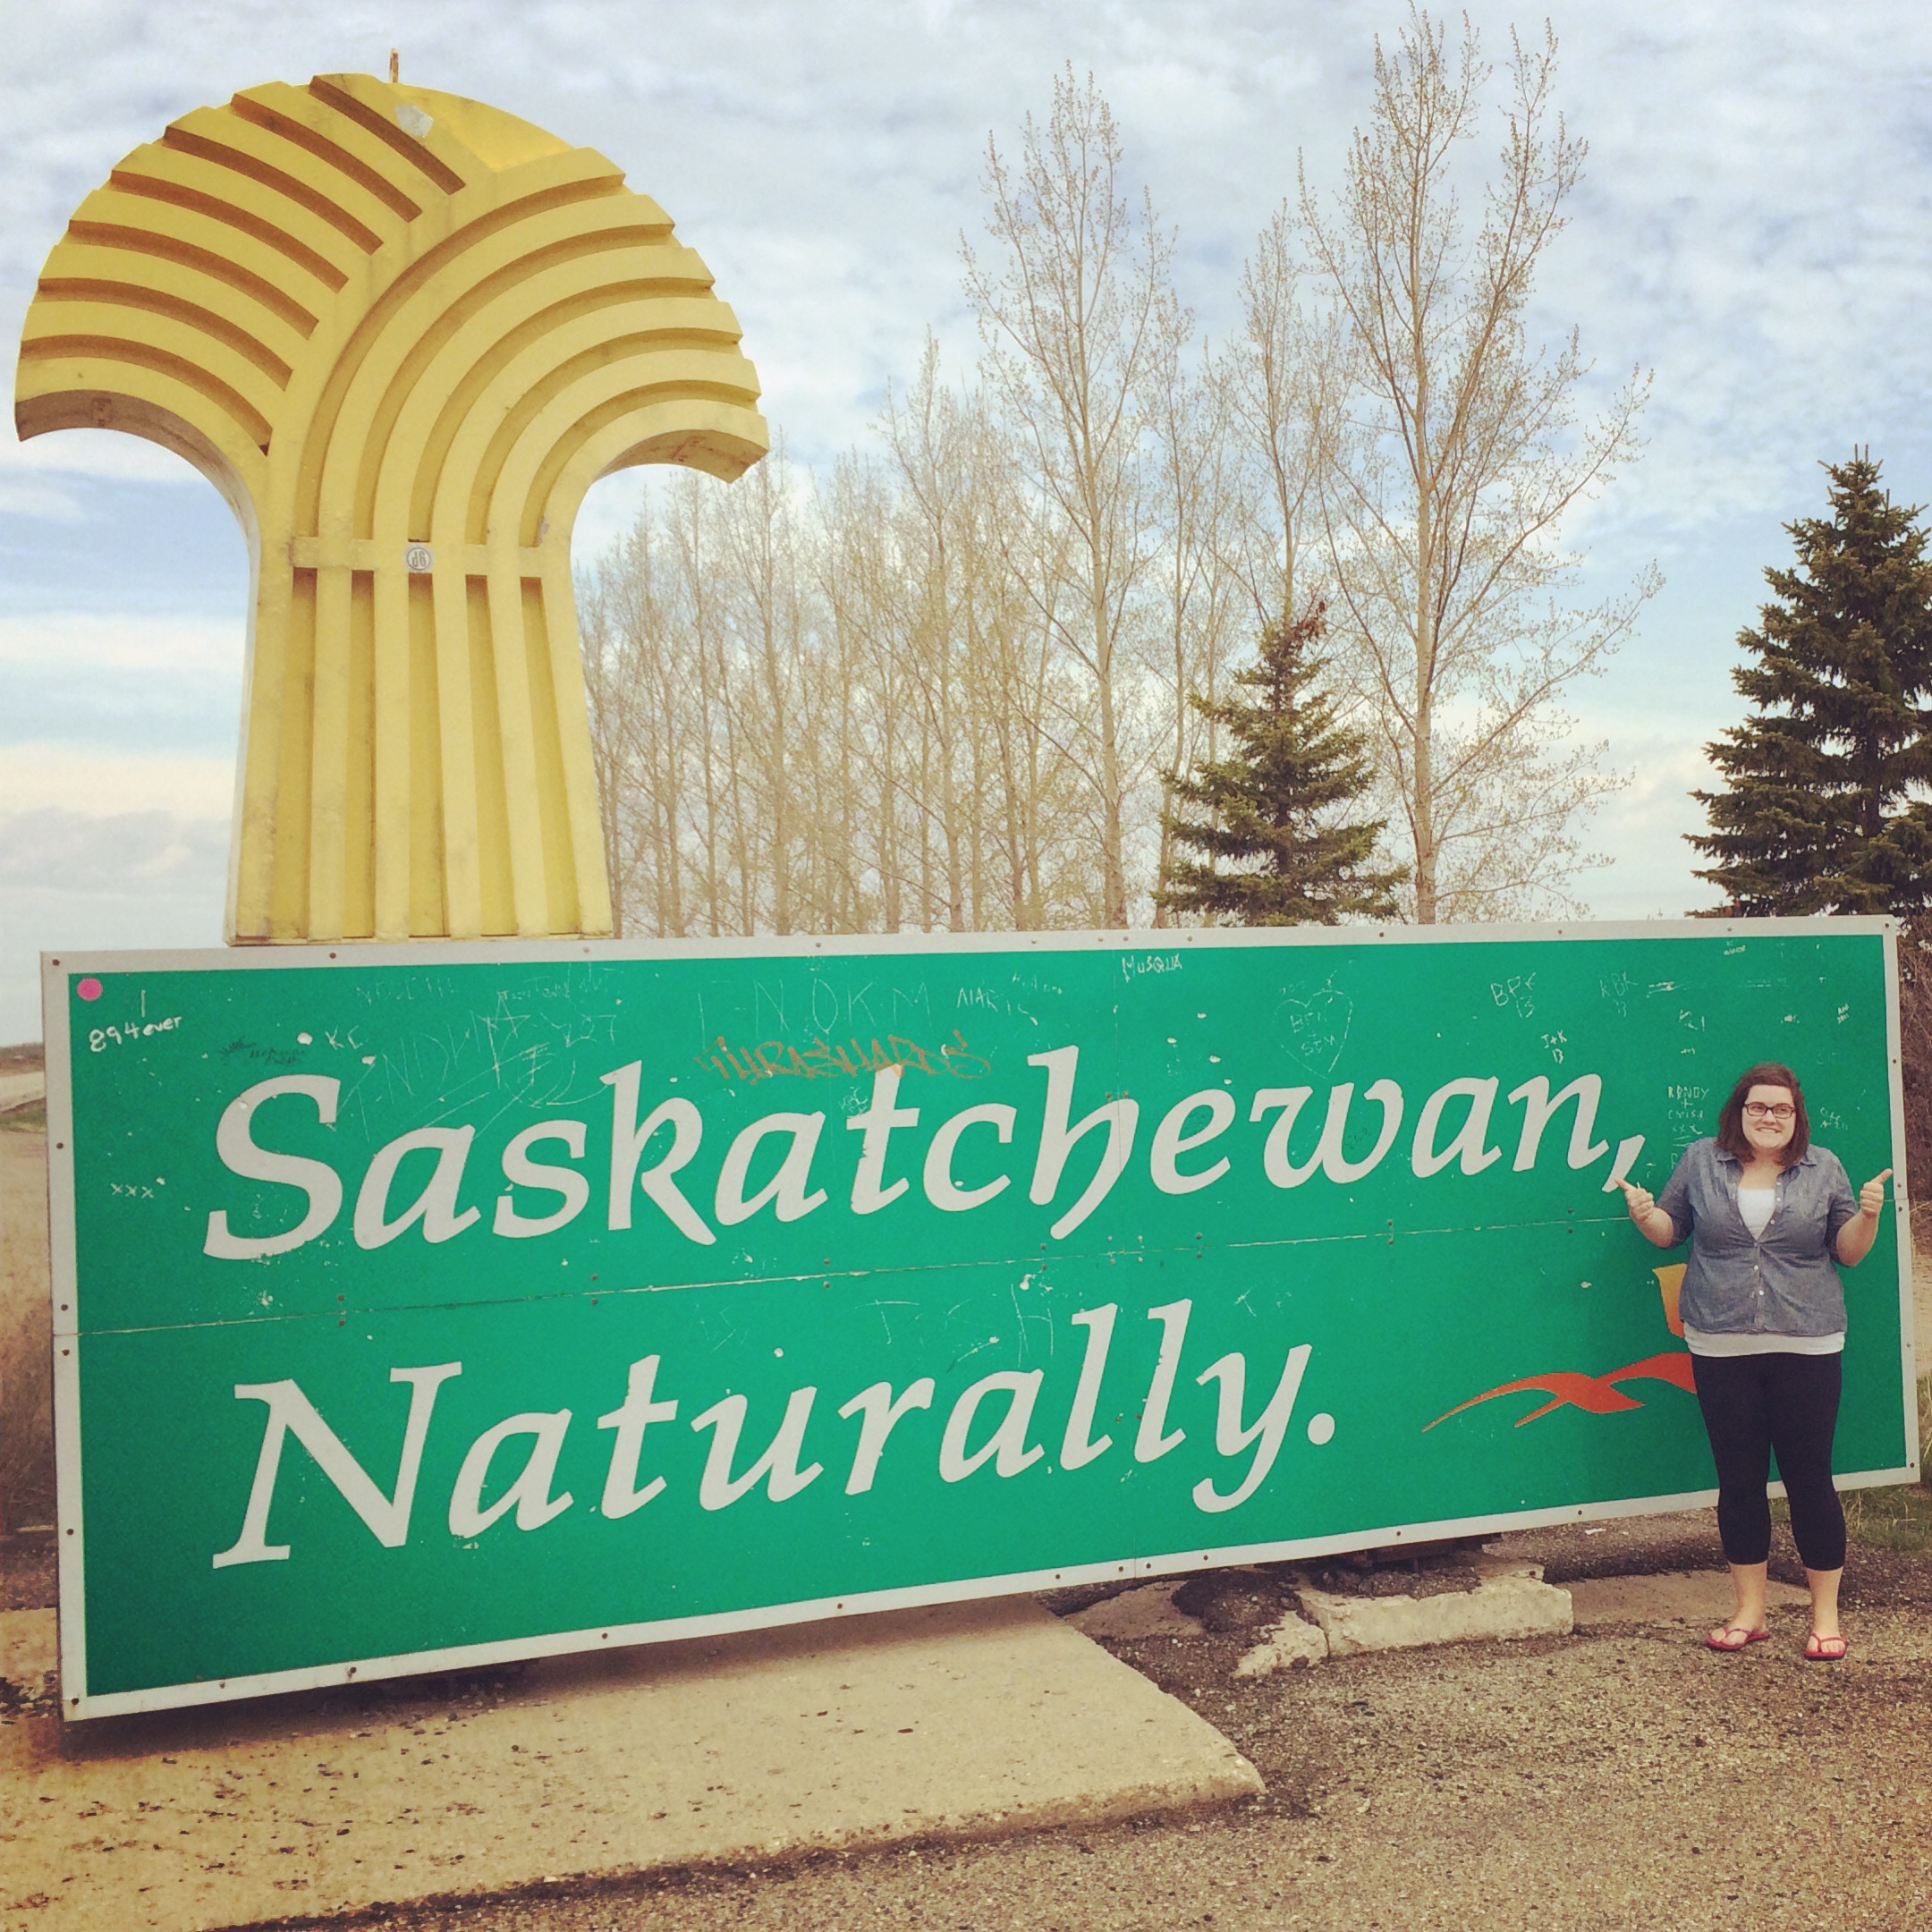 Made it to Saskatchewan